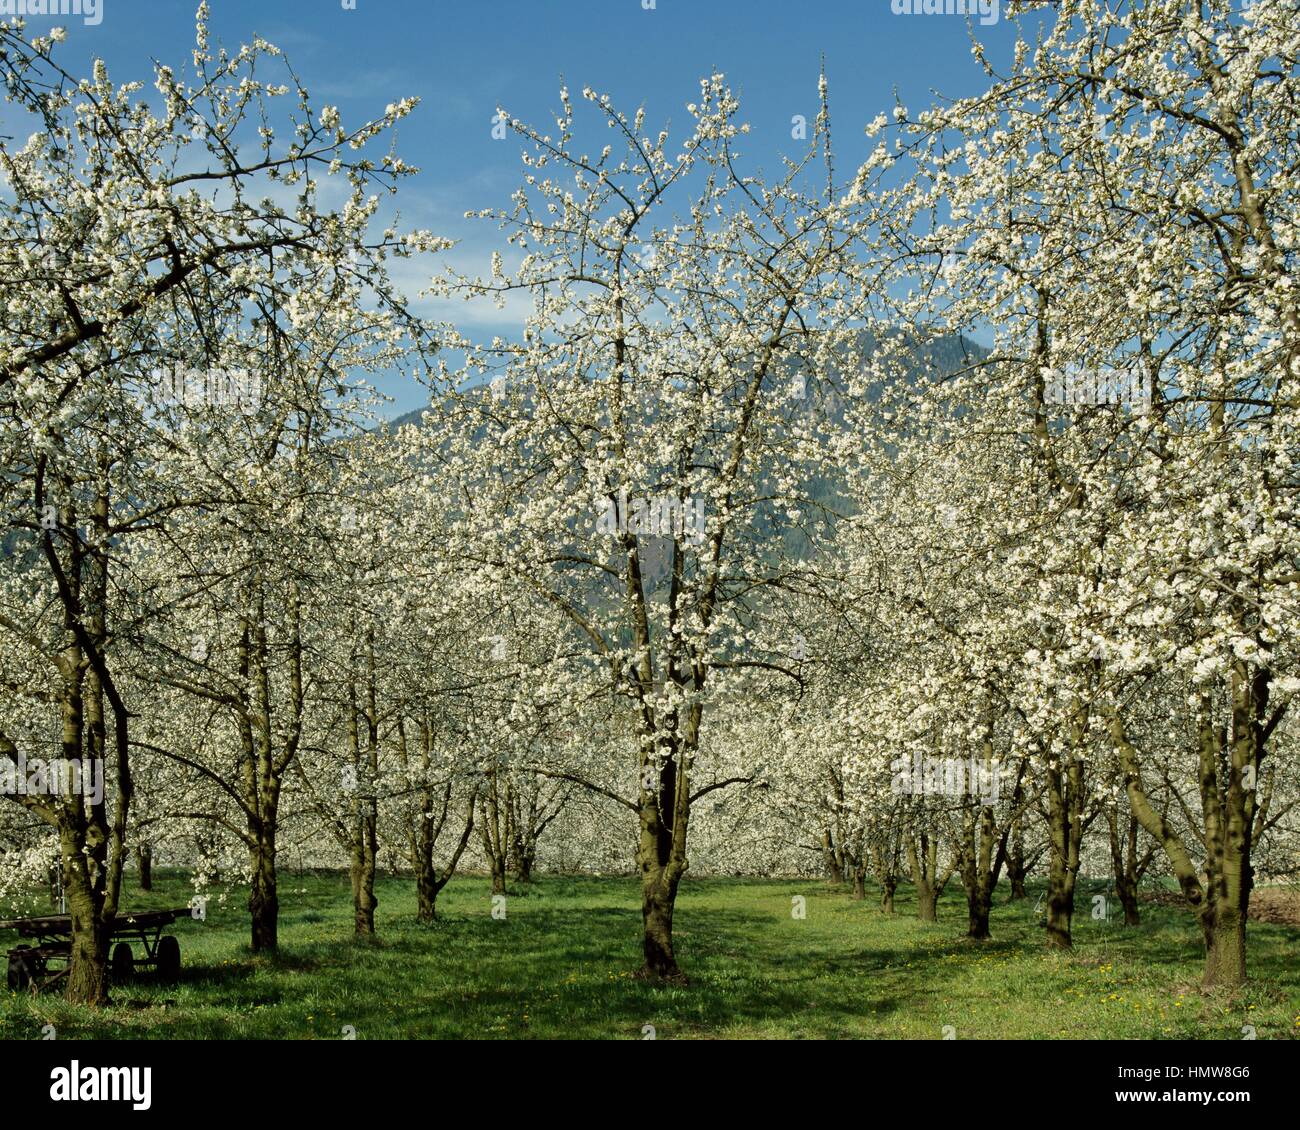 Wild Cherry trees in bloom (Prunus avium), Rosaceae, Marostica, Italy. Stock Photo